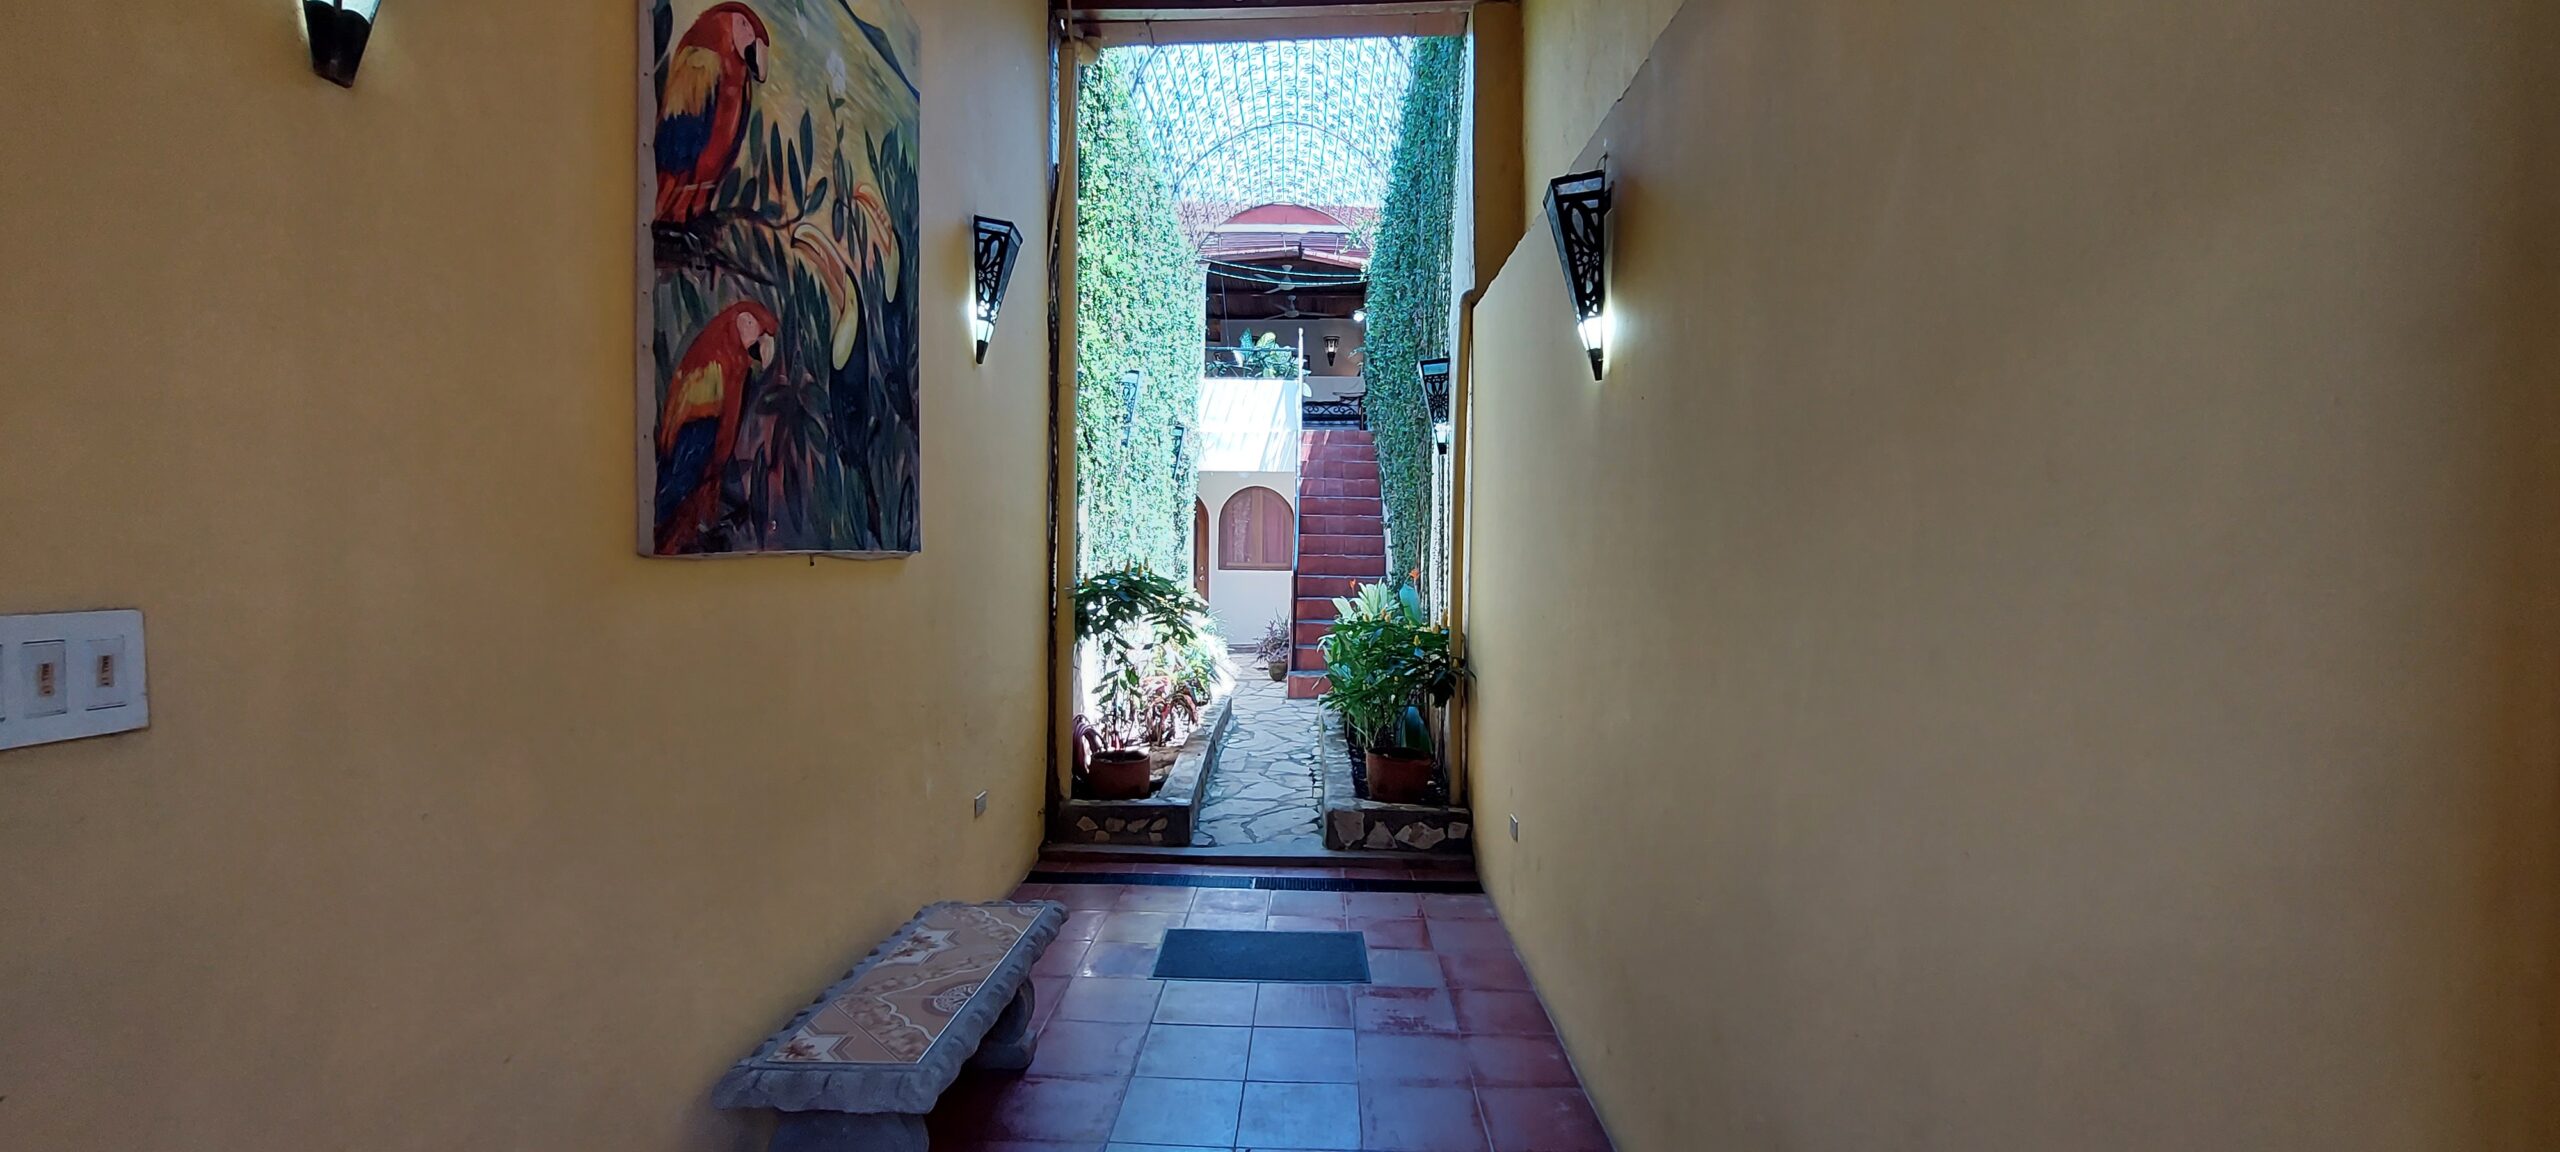 Casa Estrella - Vacation Rental Home in Granada, Nicaragua.